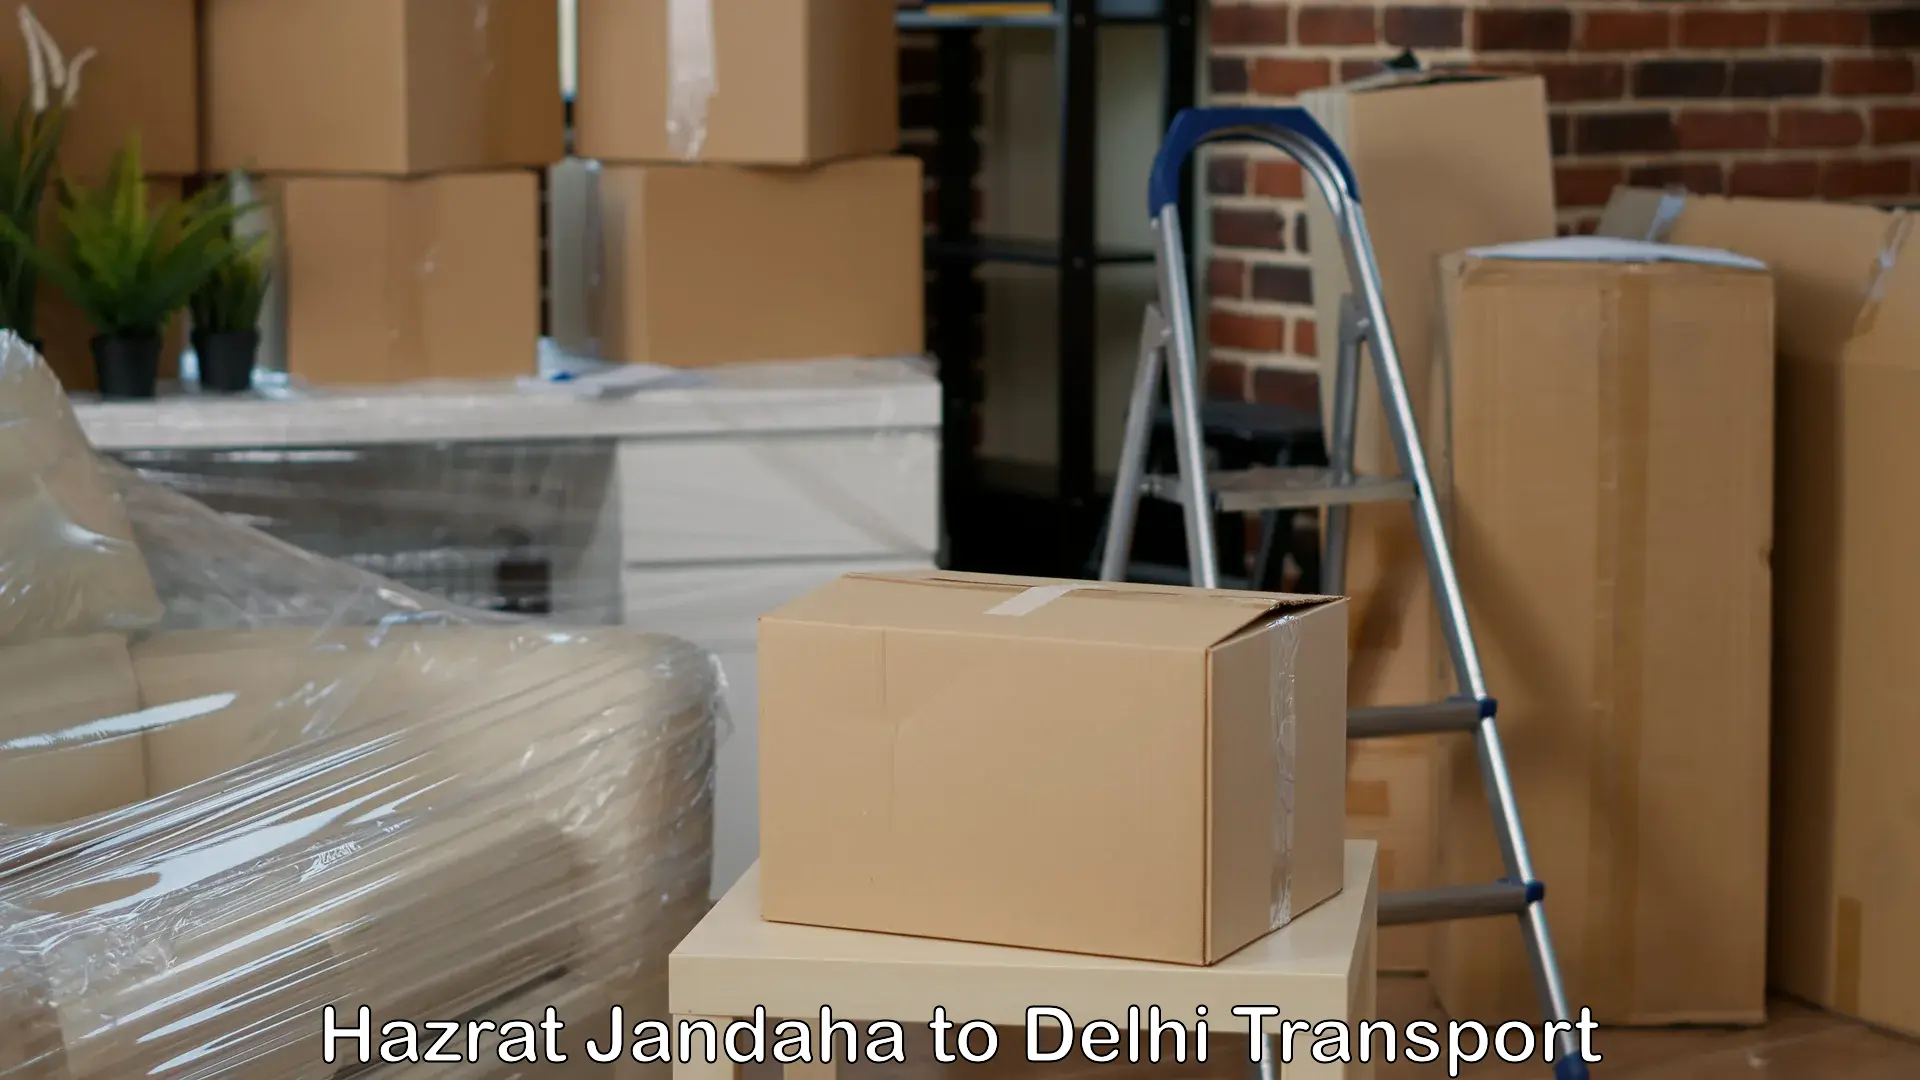 Truck transport companies in India Hazrat Jandaha to Jamia Millia Islamia New Delhi